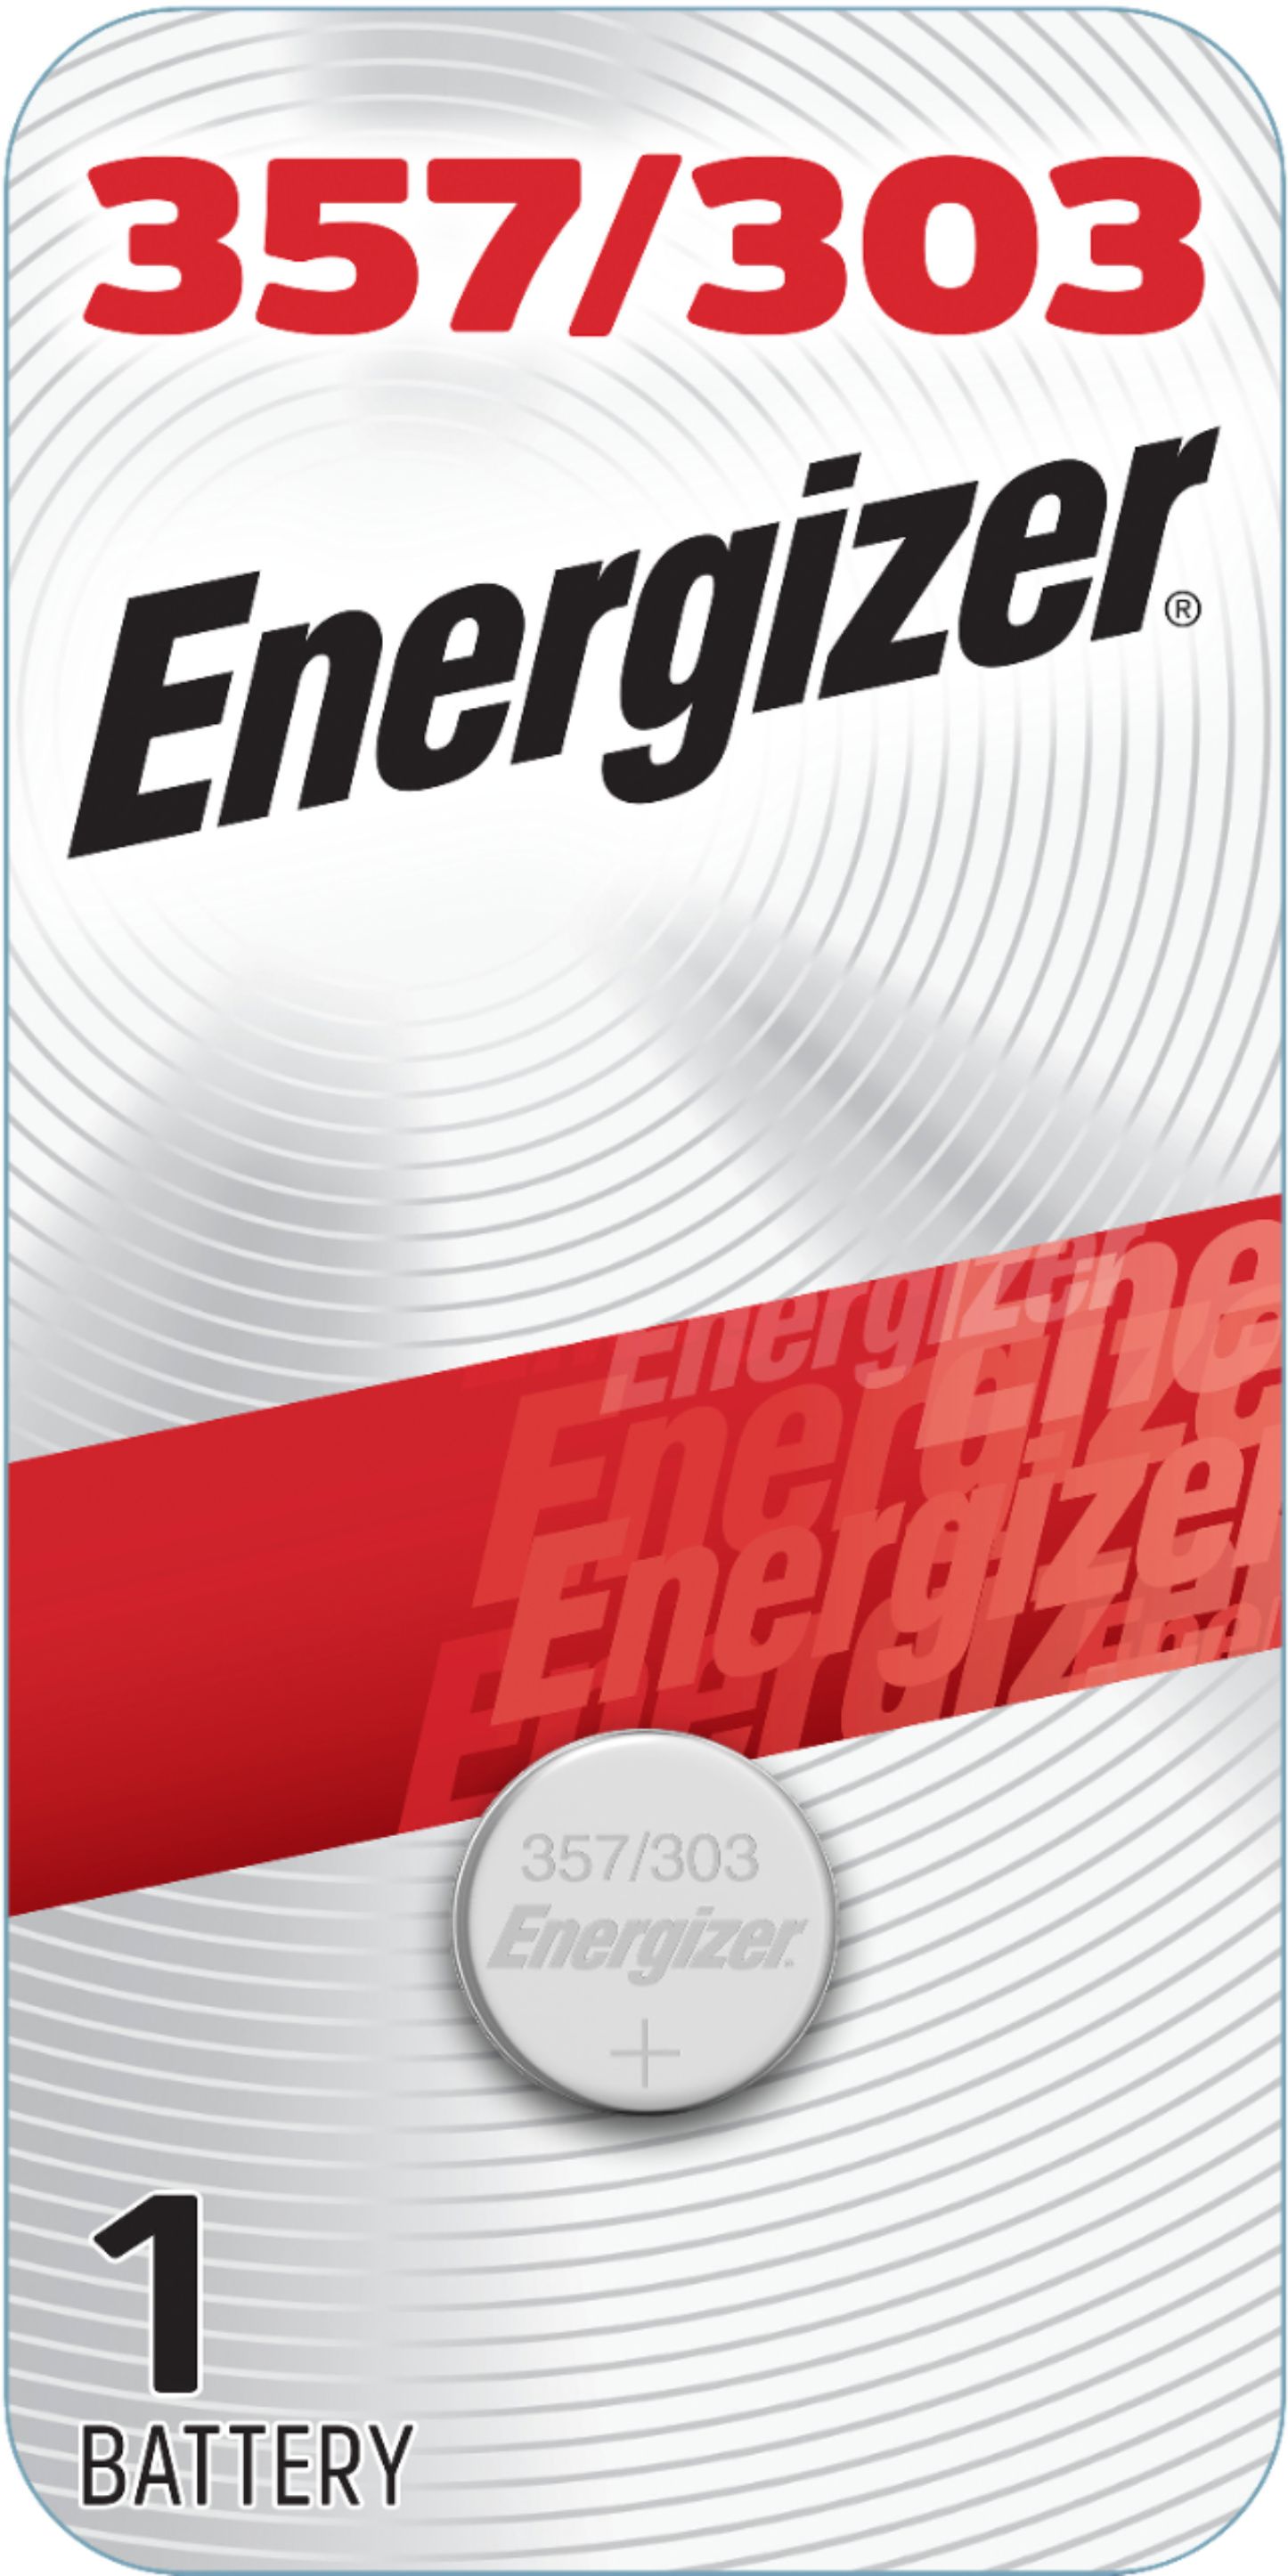 15 Energizer 357 303 EPX76 SR44SW AG13 LR44 D357H 228 J 280-62 SB-B9  Battery 